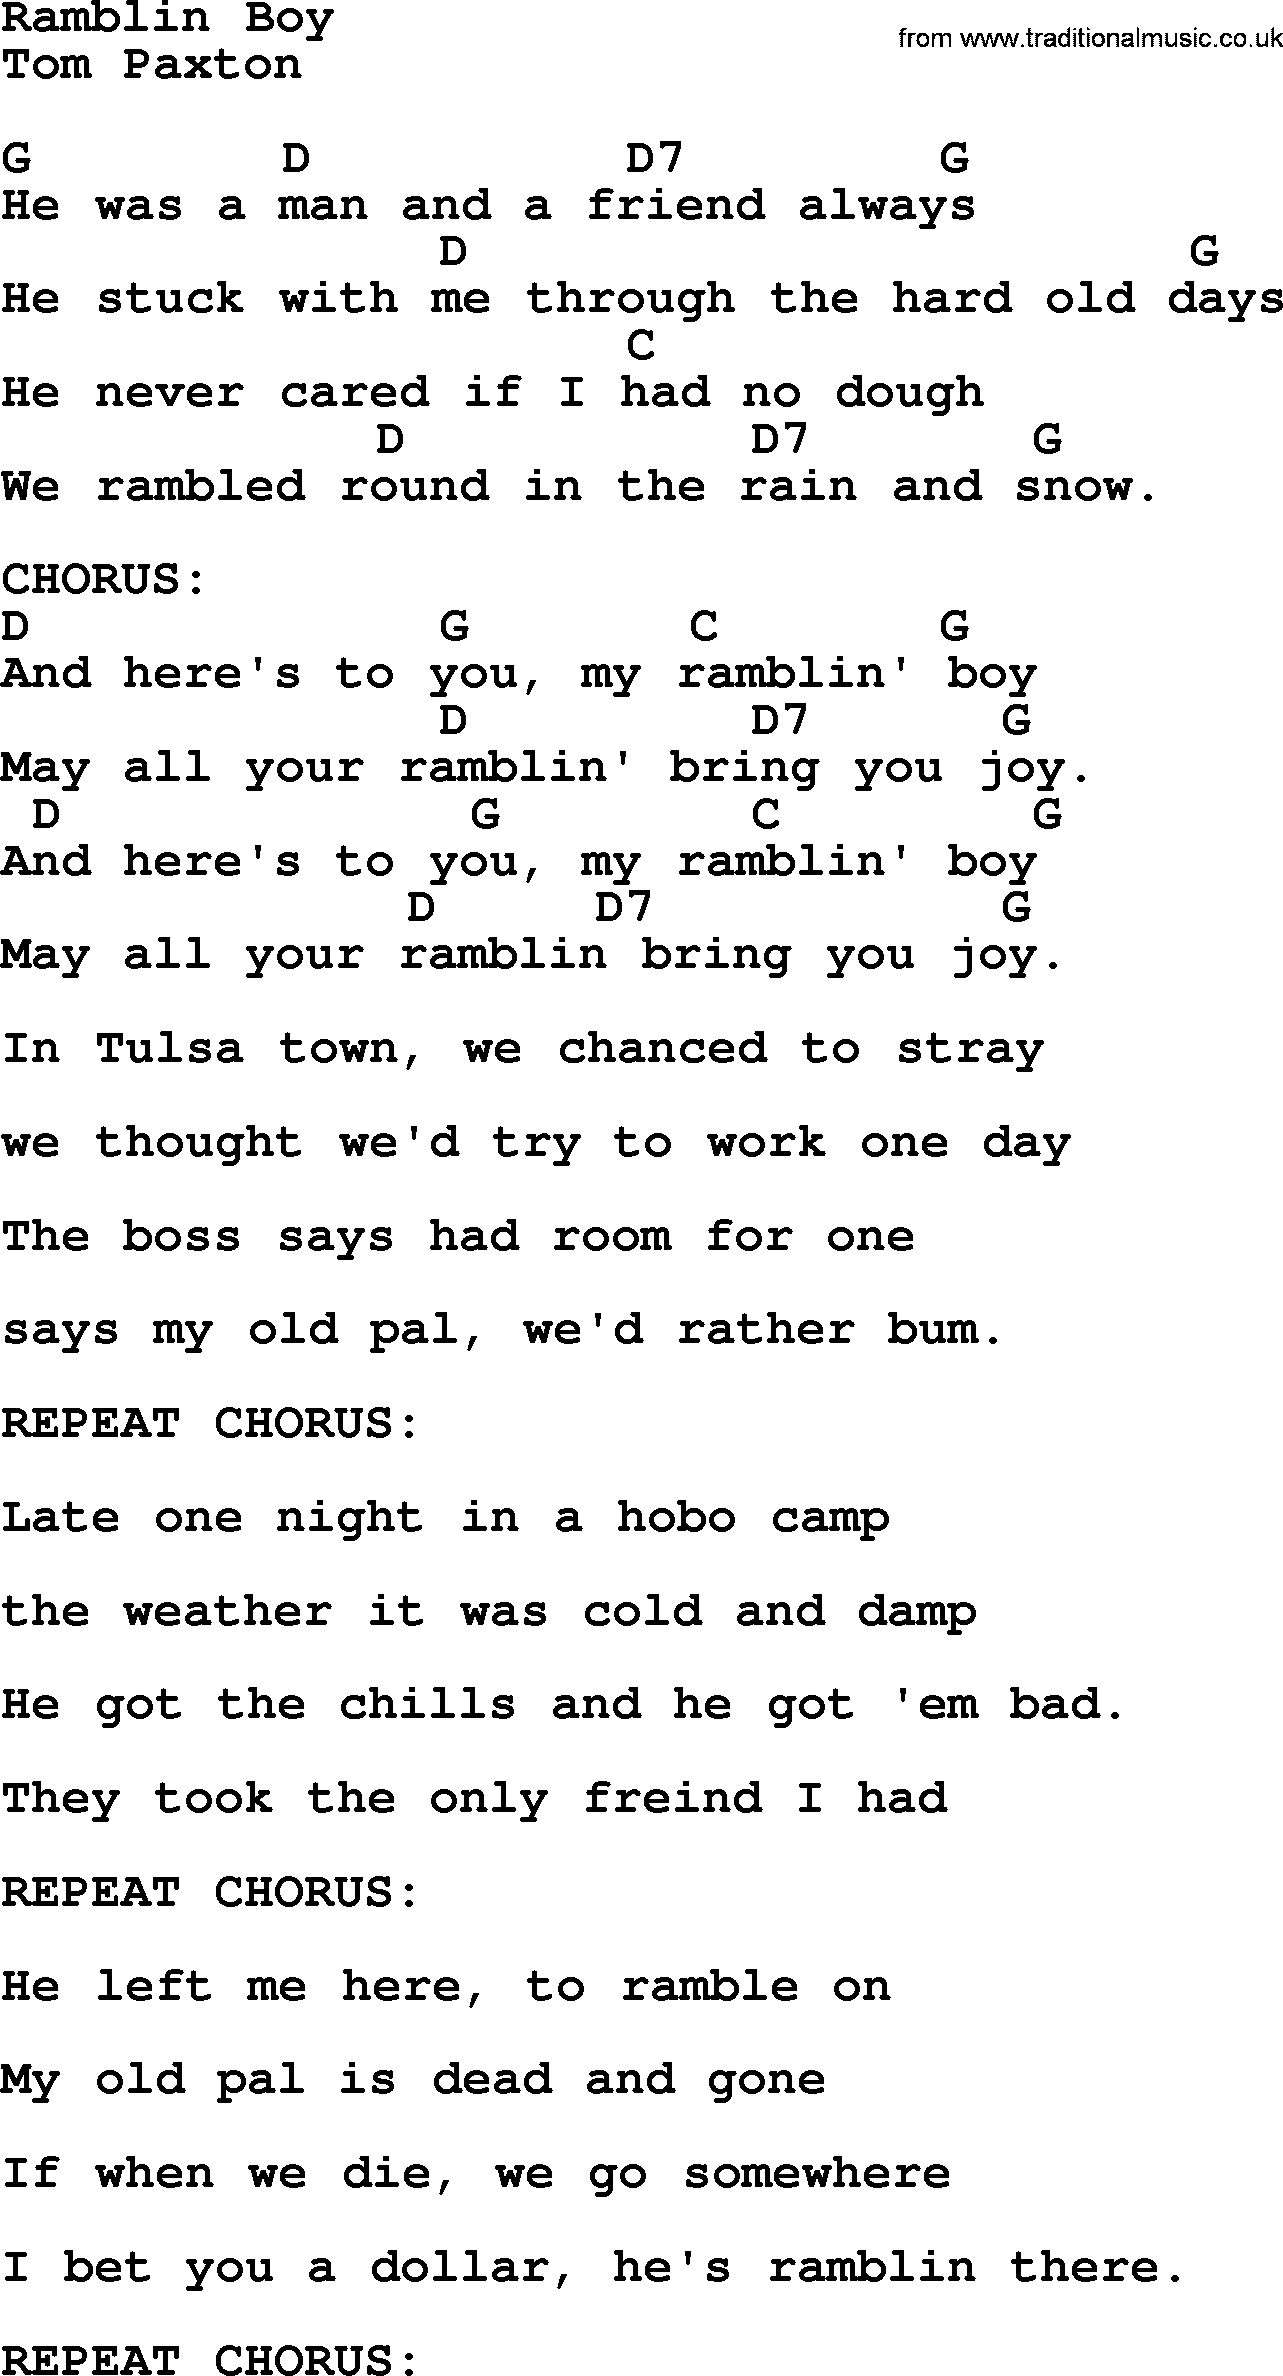 Tom Paxton song: Ramblin Boy, lyrics and chords